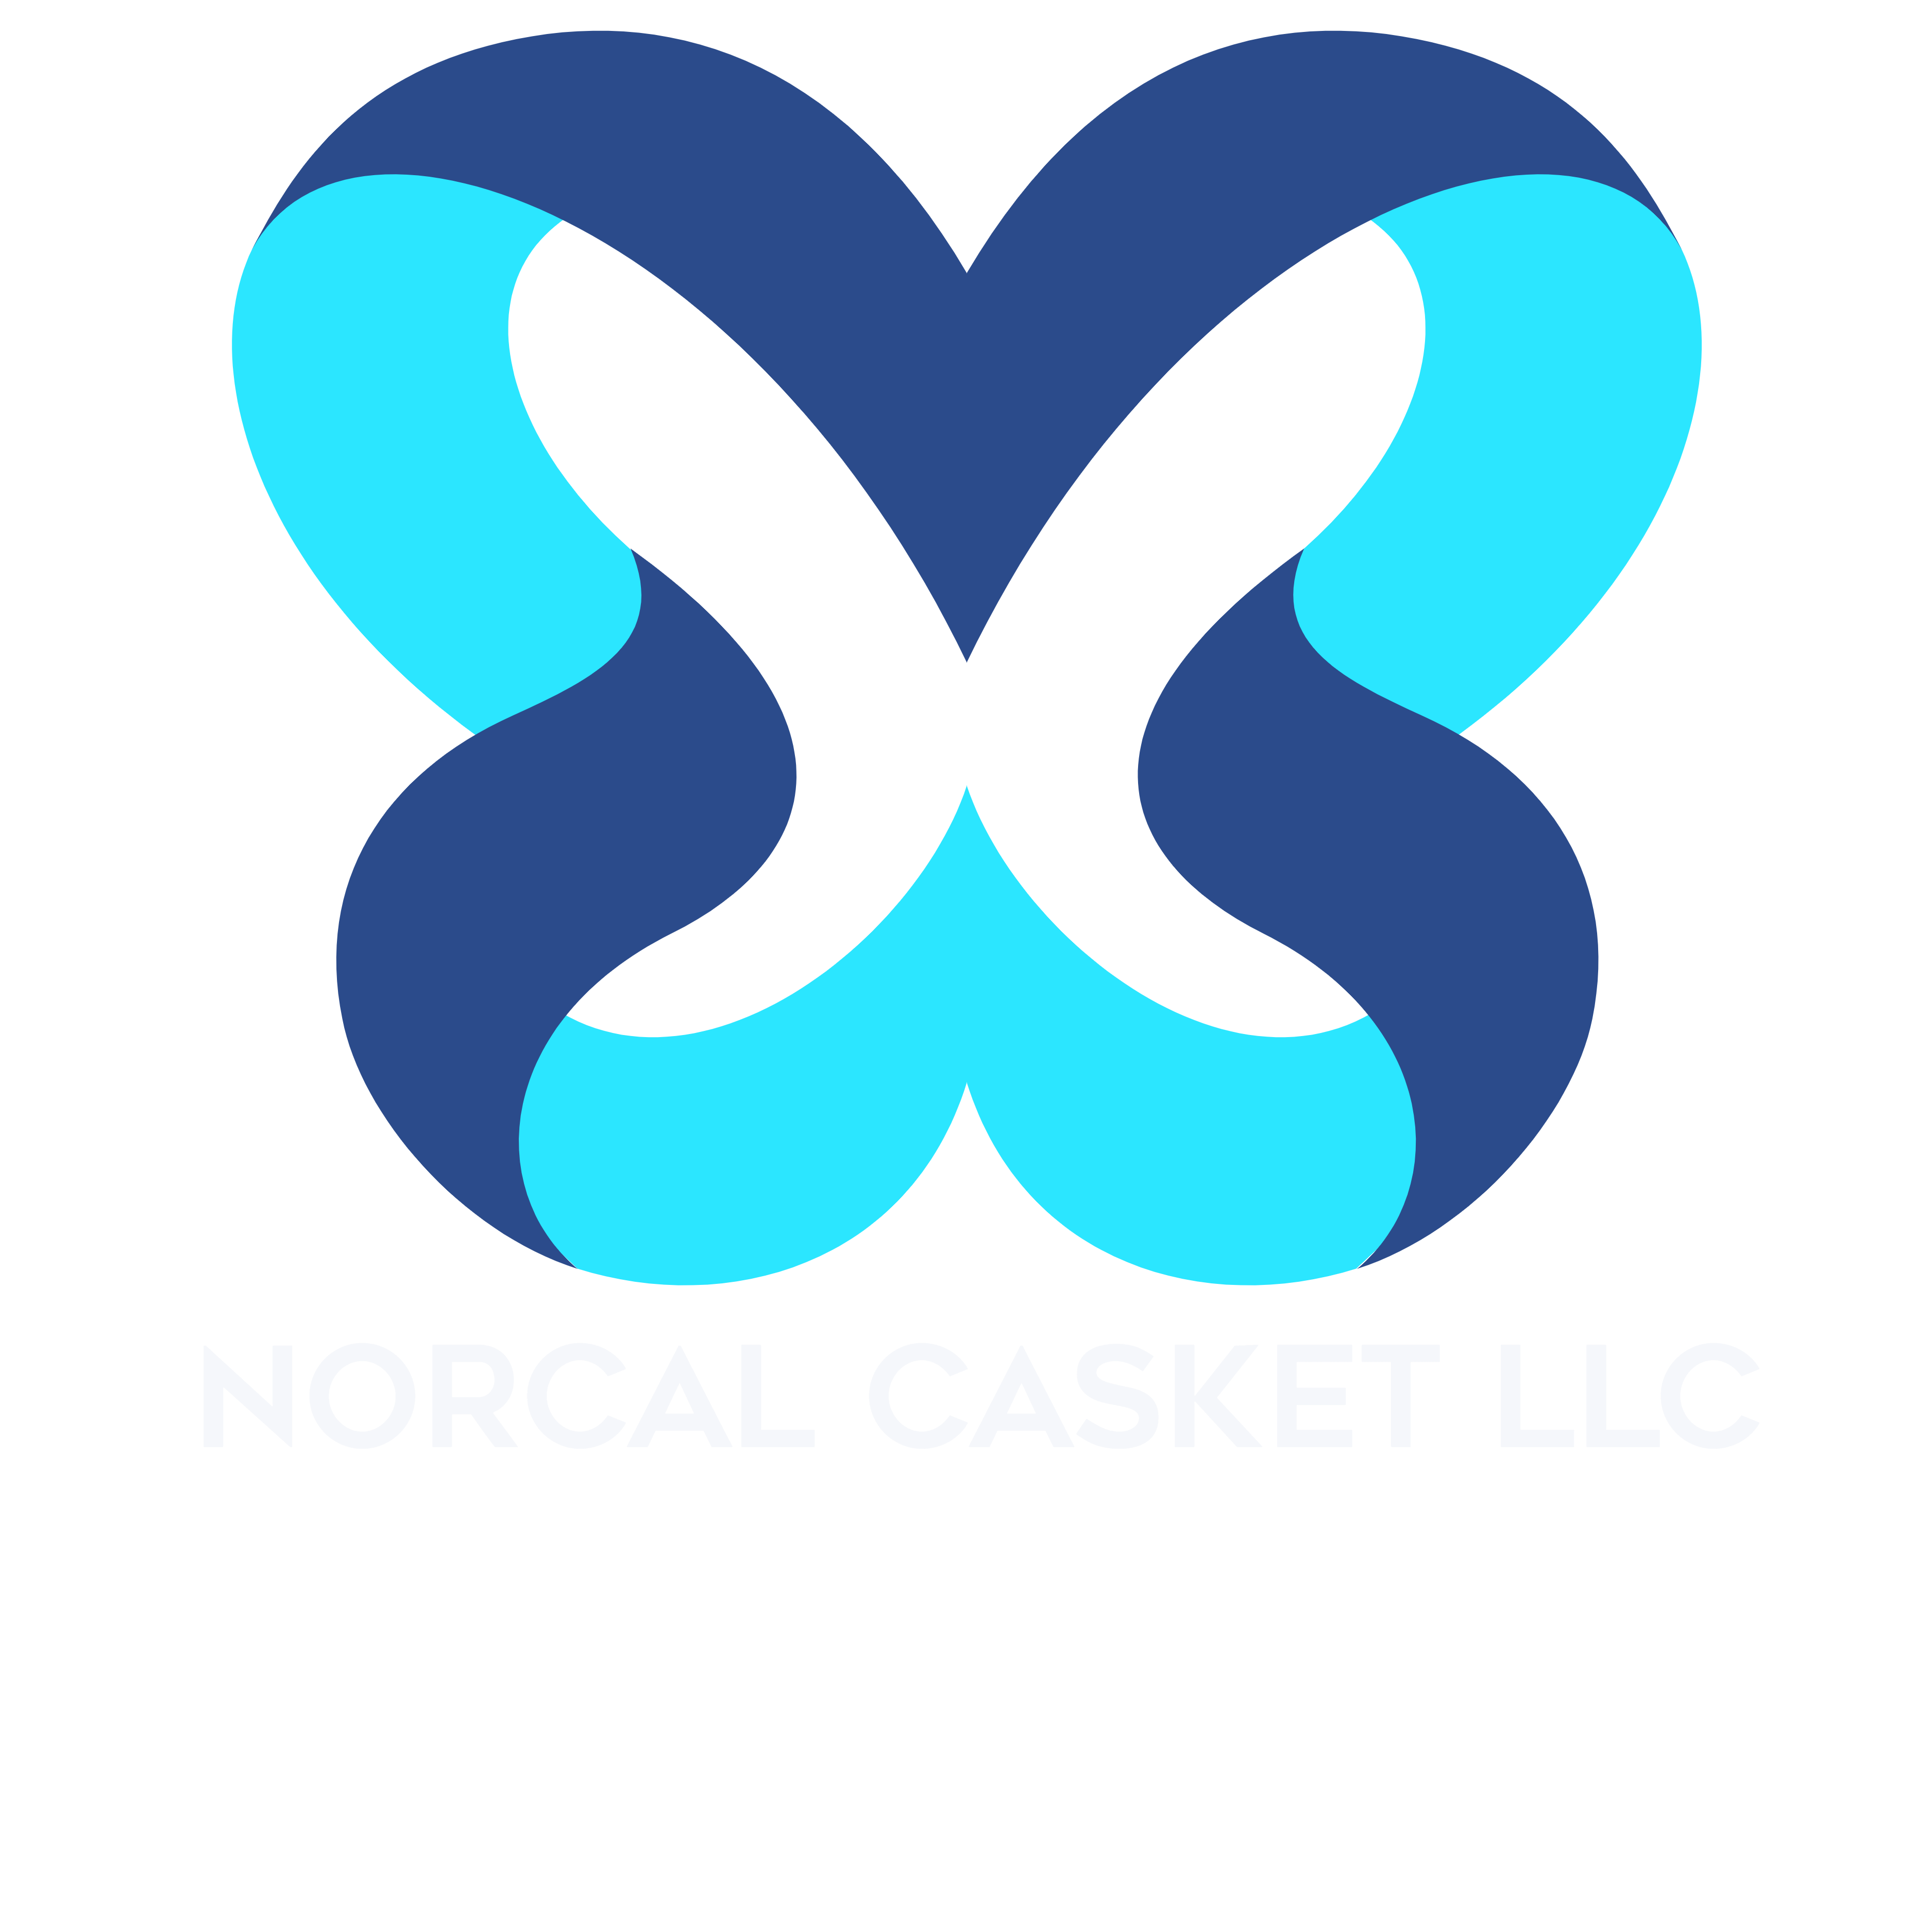 NorCal Casket